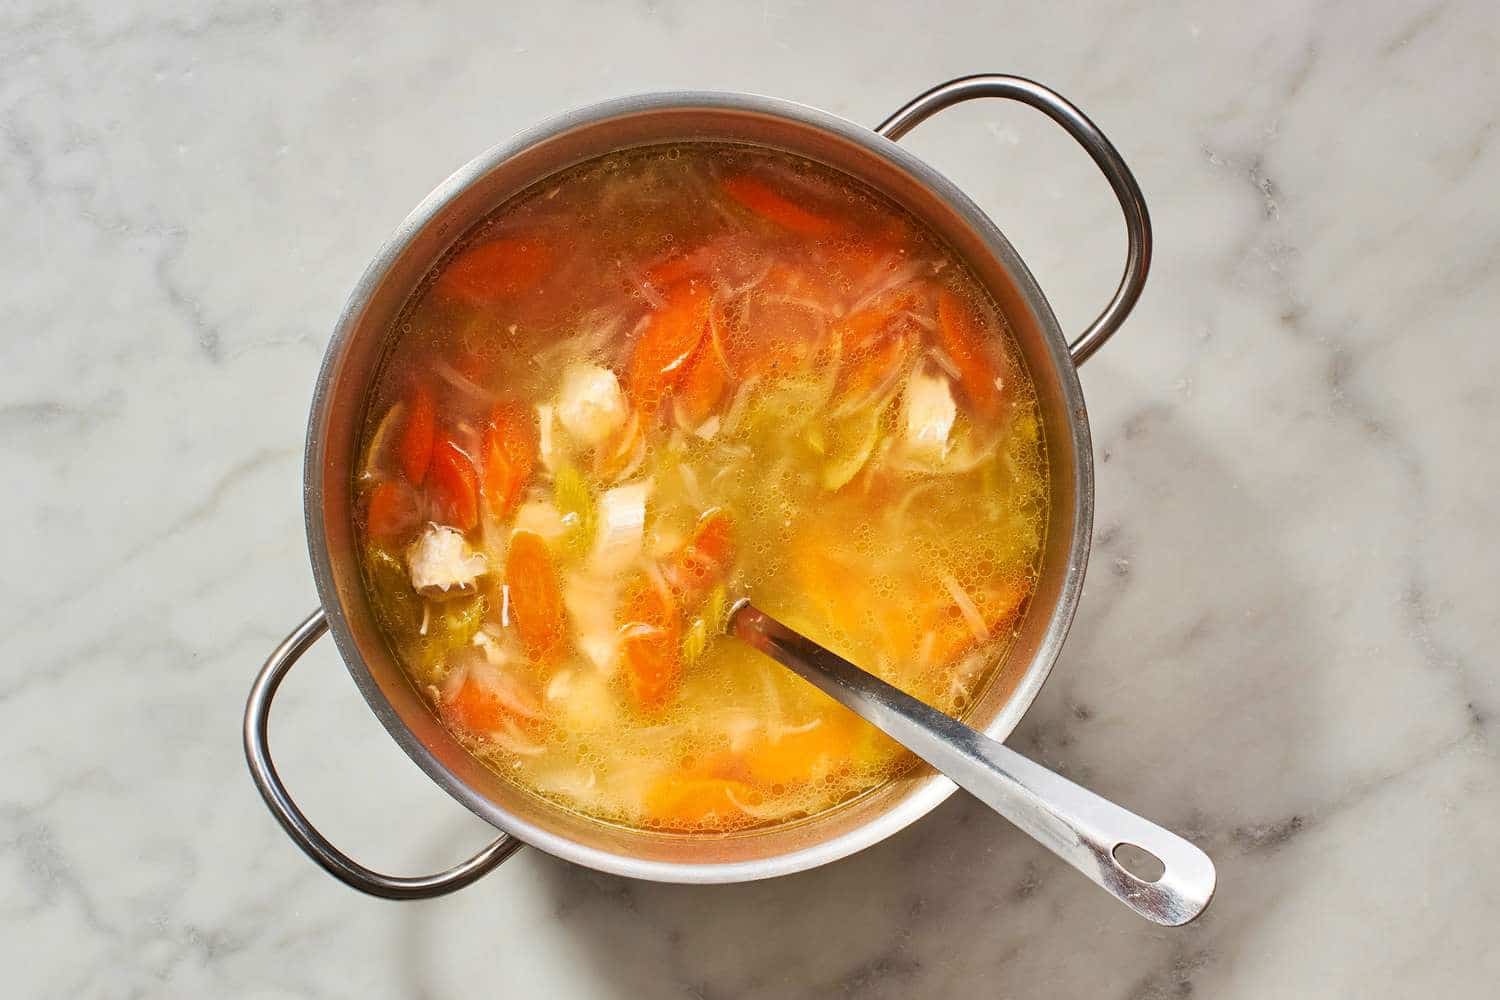 recipes for homemade soups